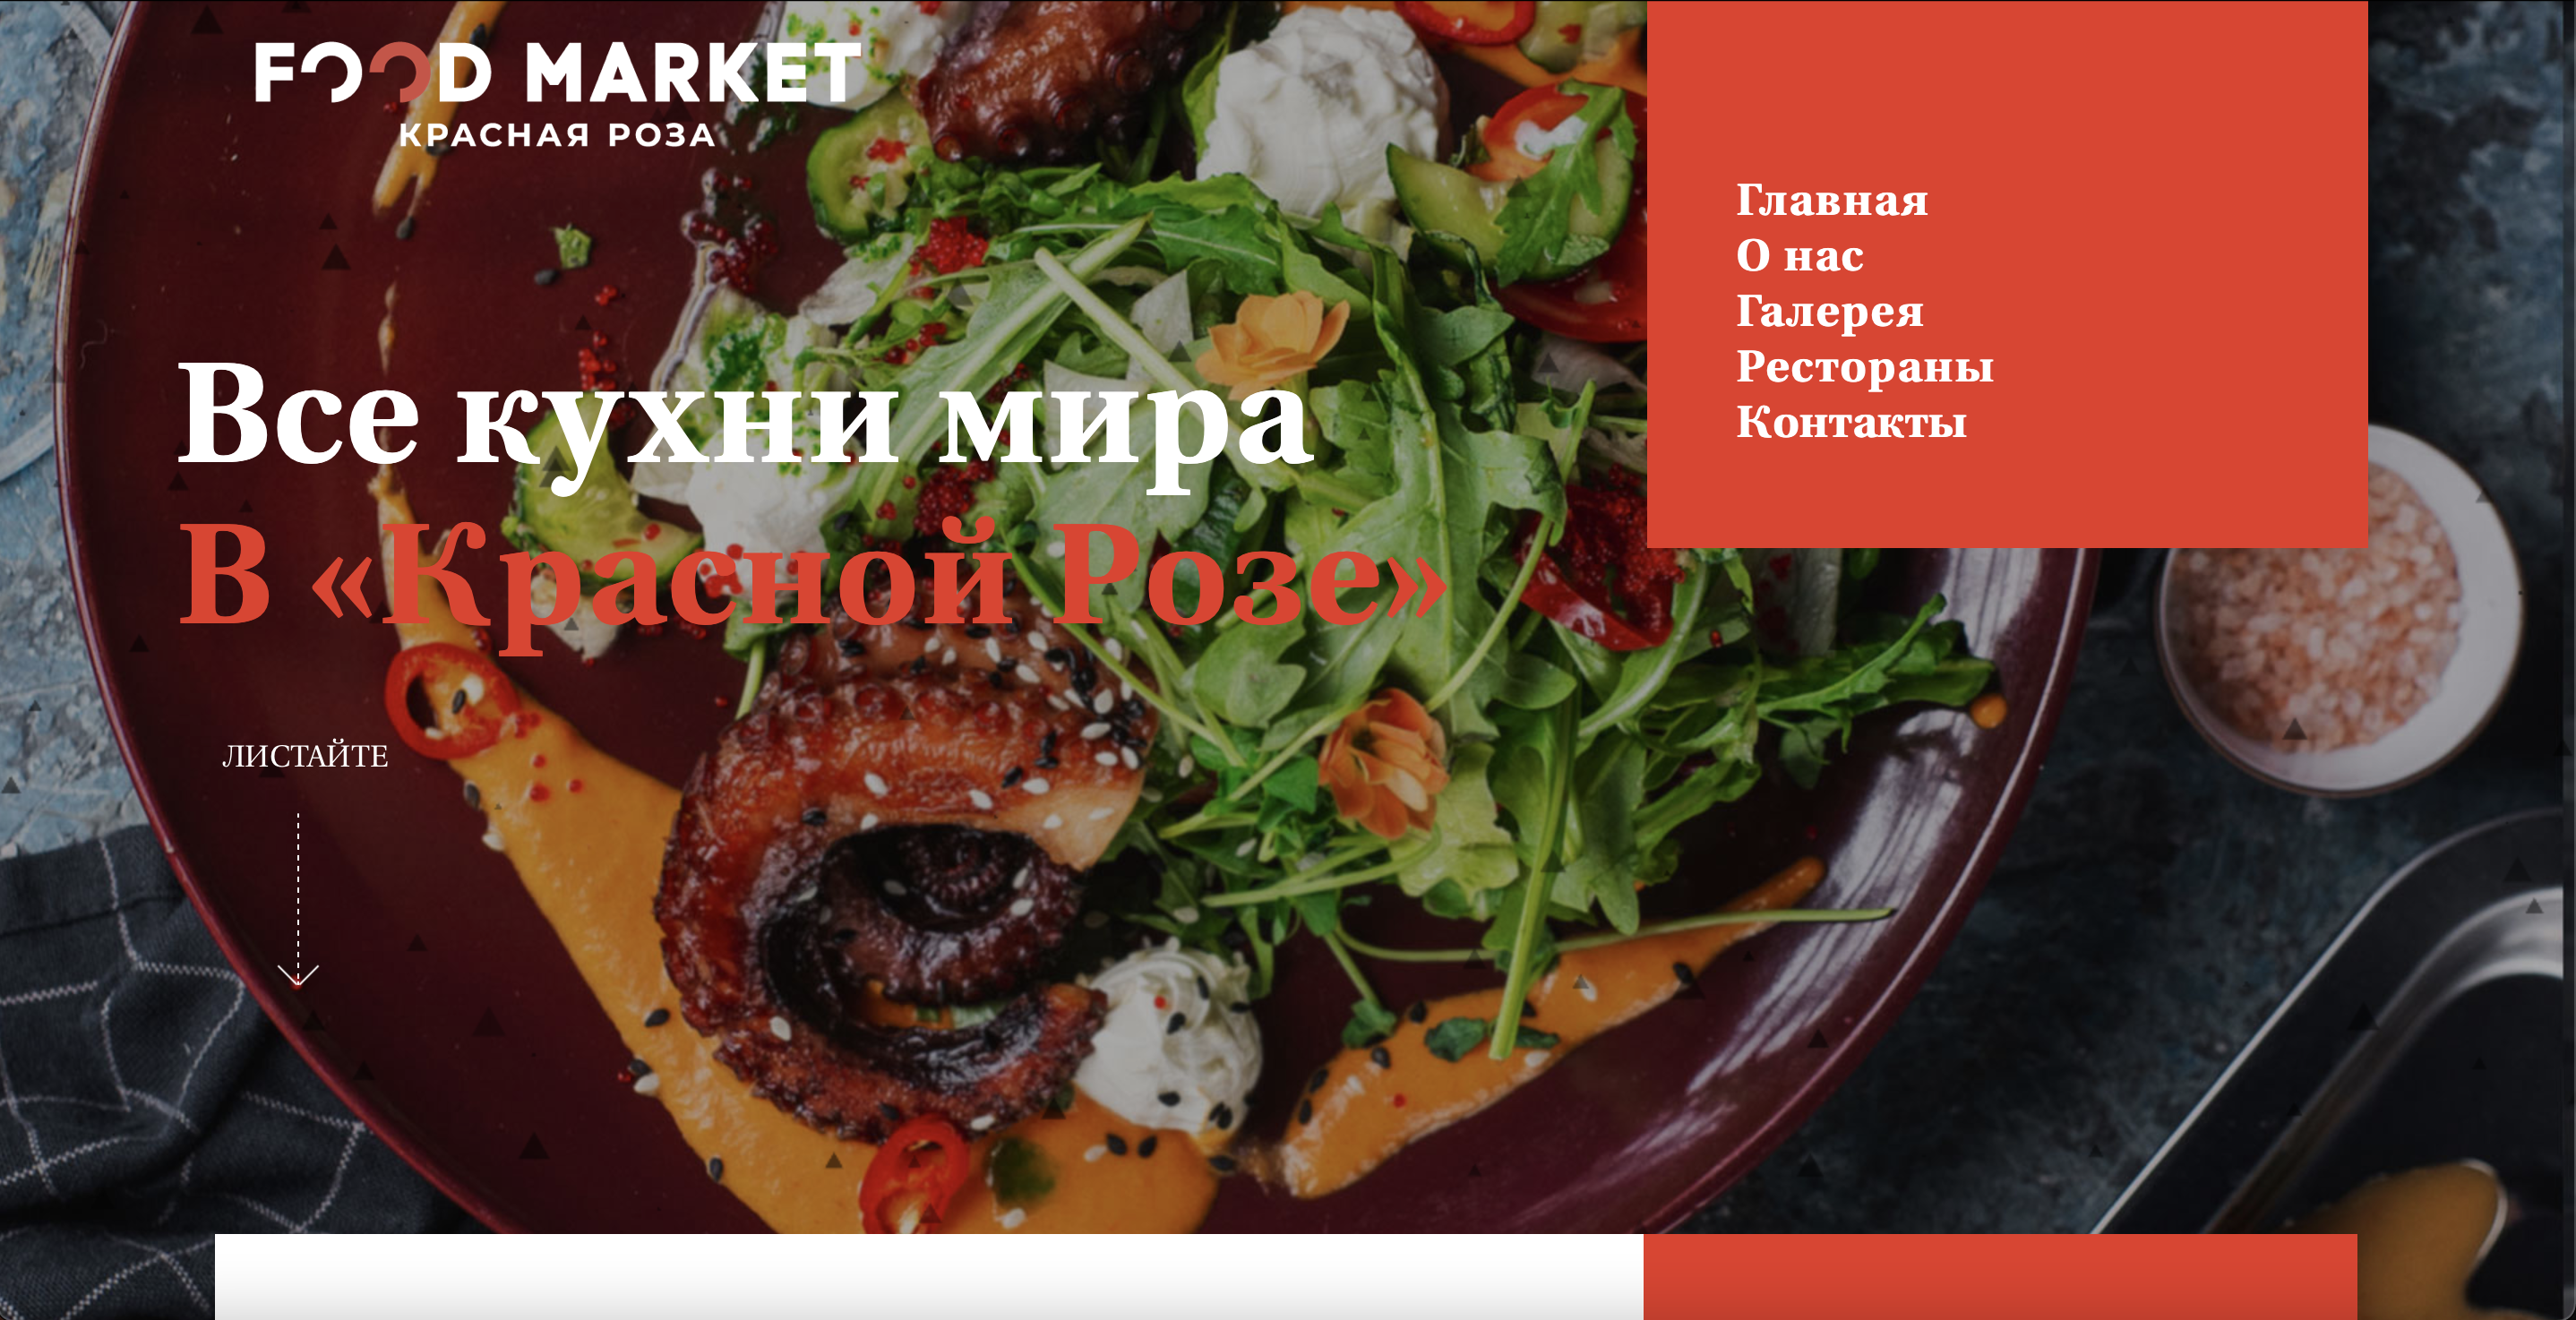 Food Market. Красная Роза - Mayco Agency